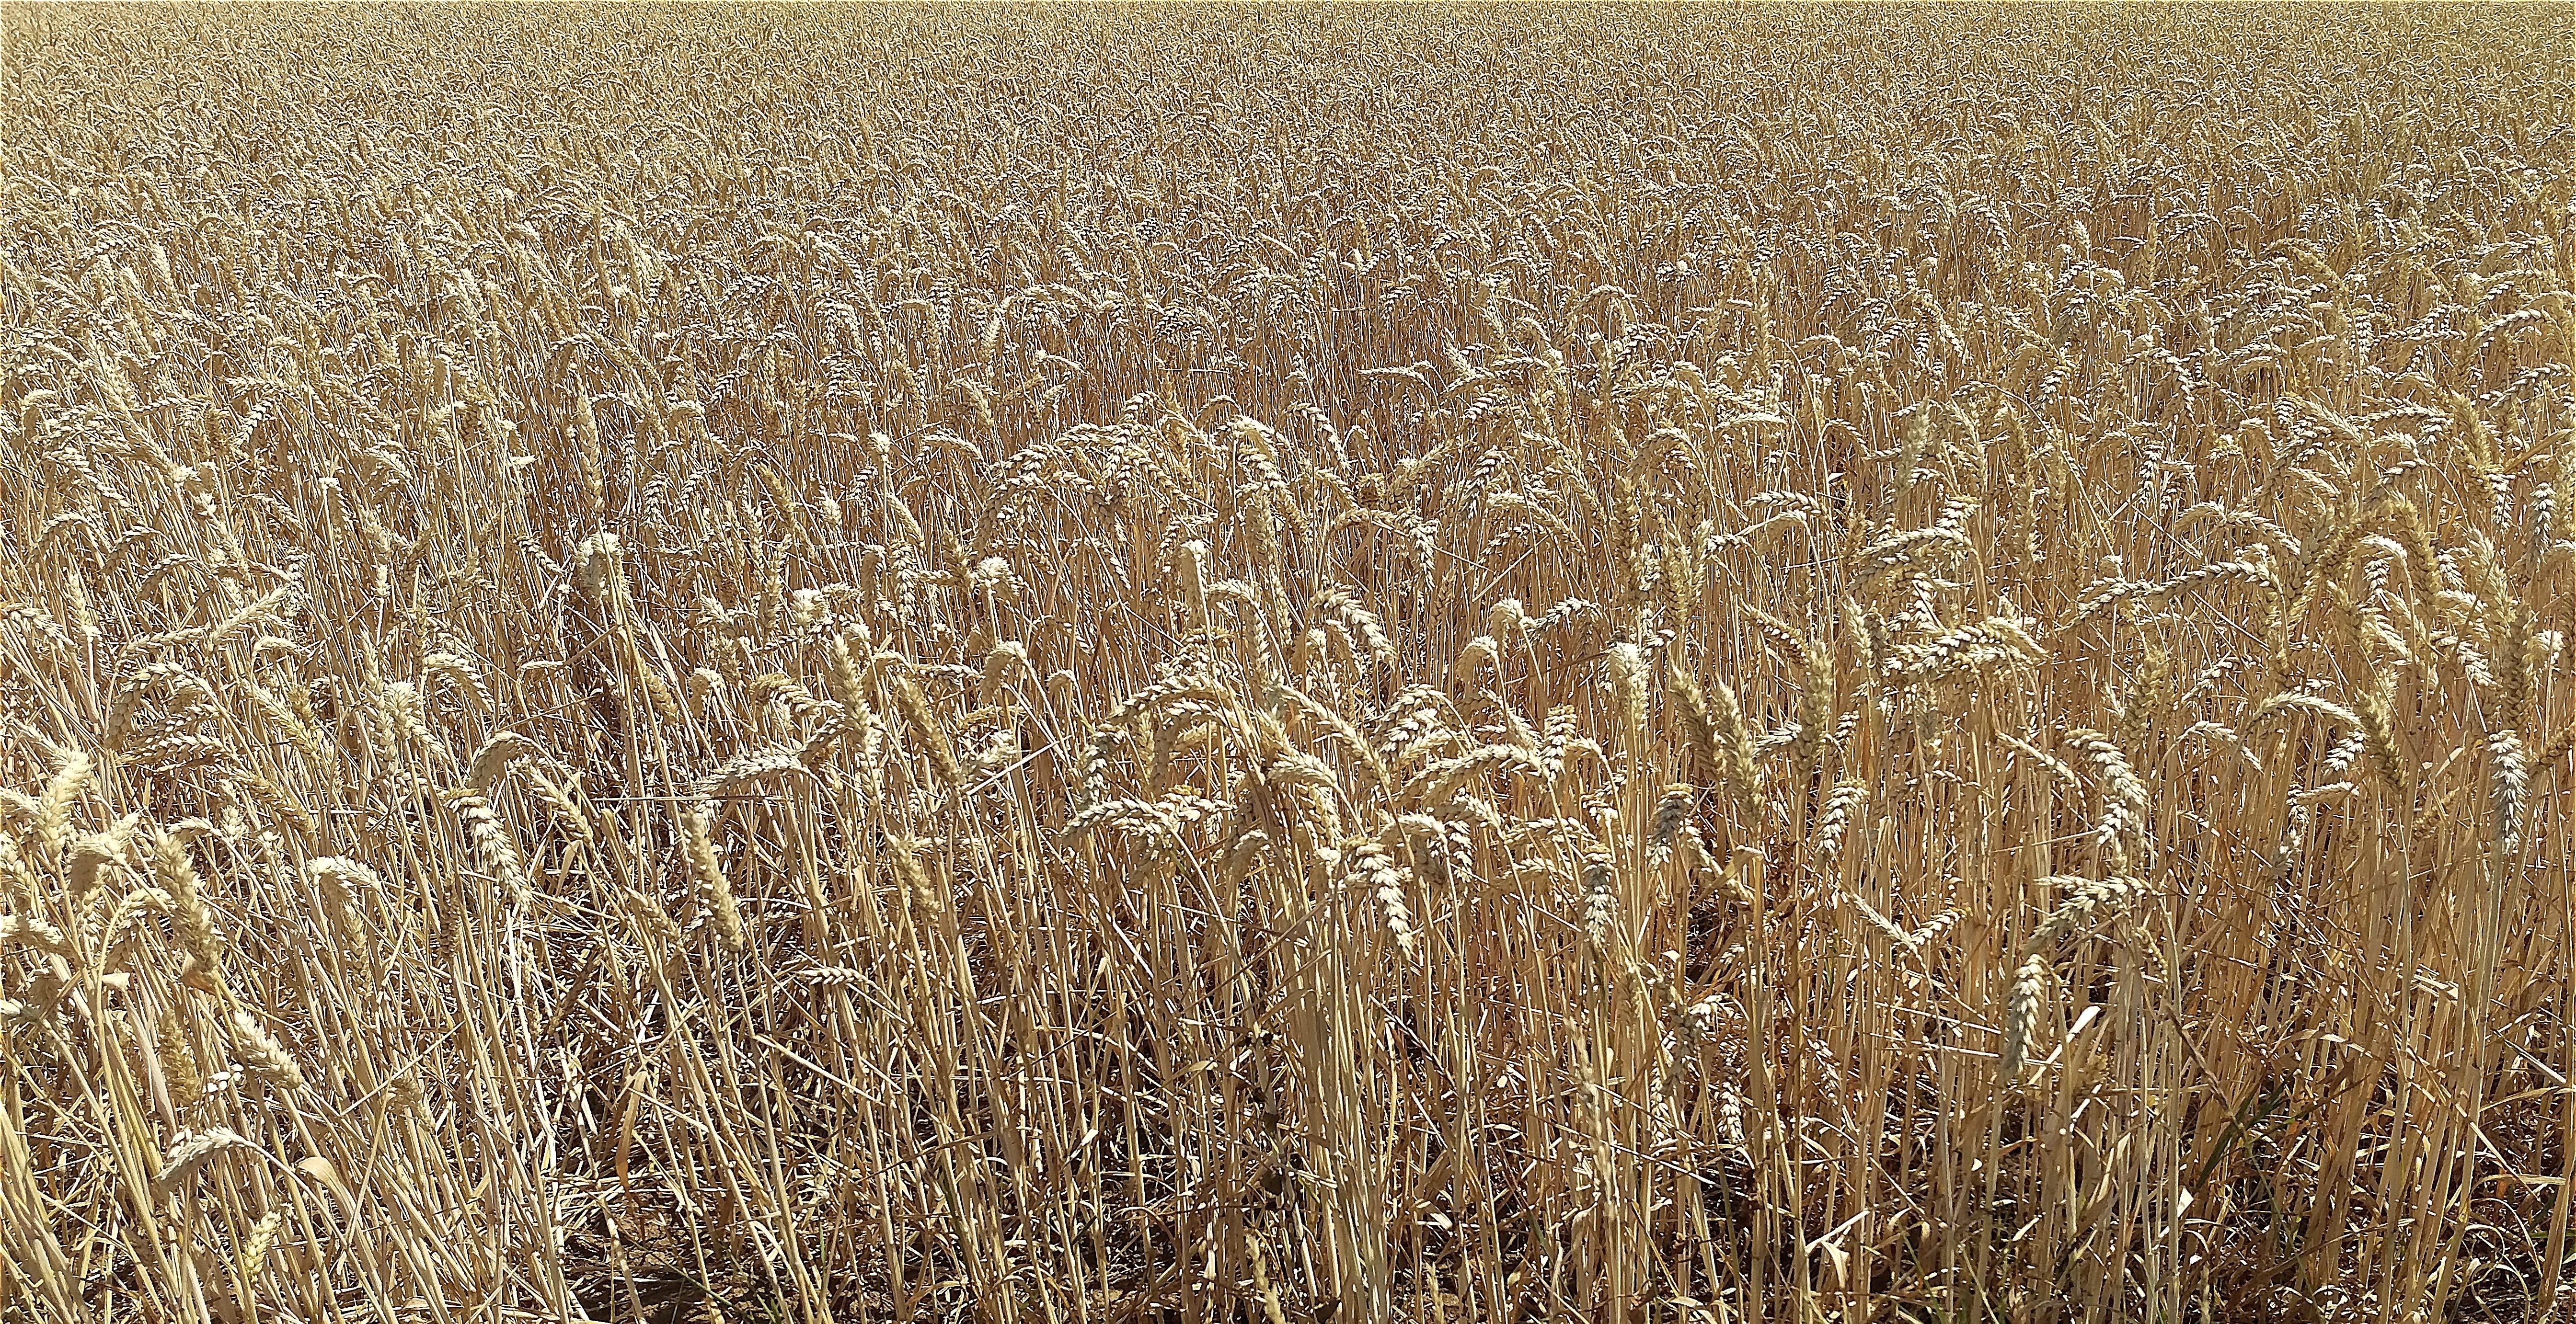 field of wheat grains